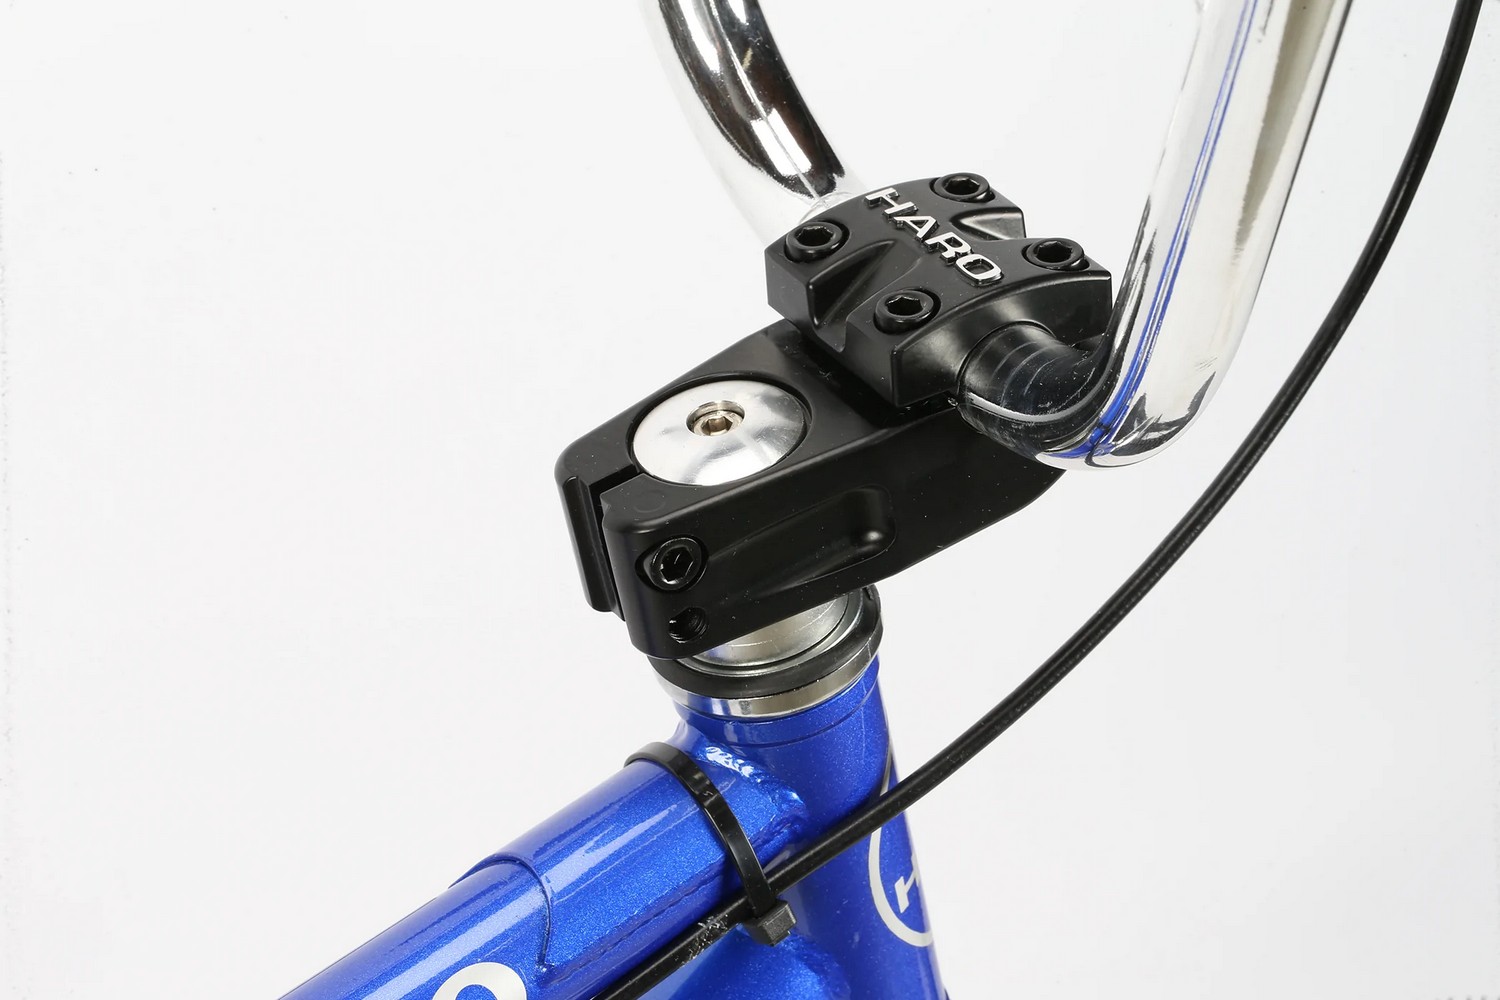 Экстремальный велосипед Haro Parkway 20, год 2022, цвет Синий, ростовка 20.3